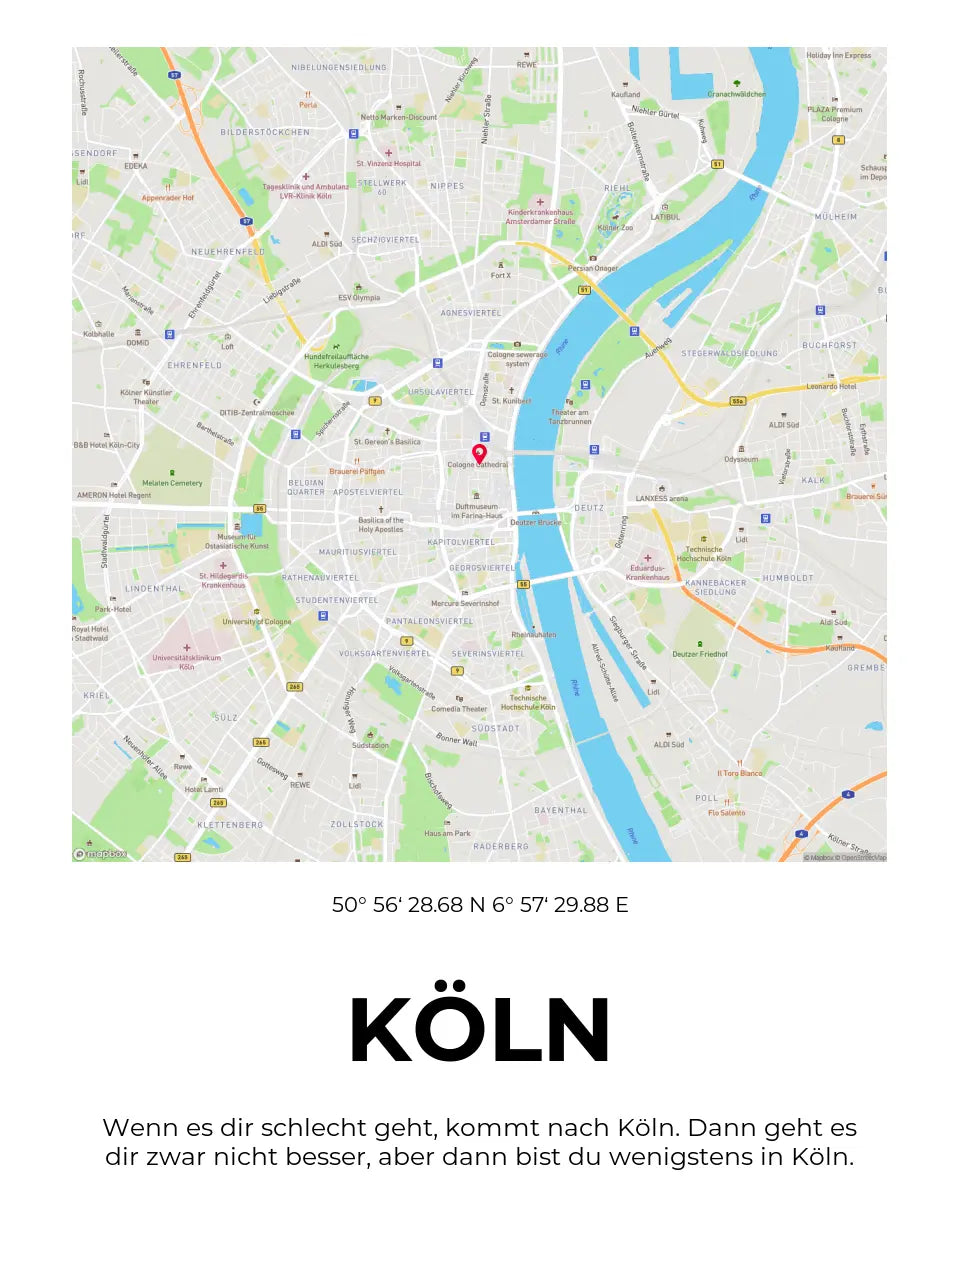 Personalisierte Stadtkarte "Köln" auf Poster/Leinwand